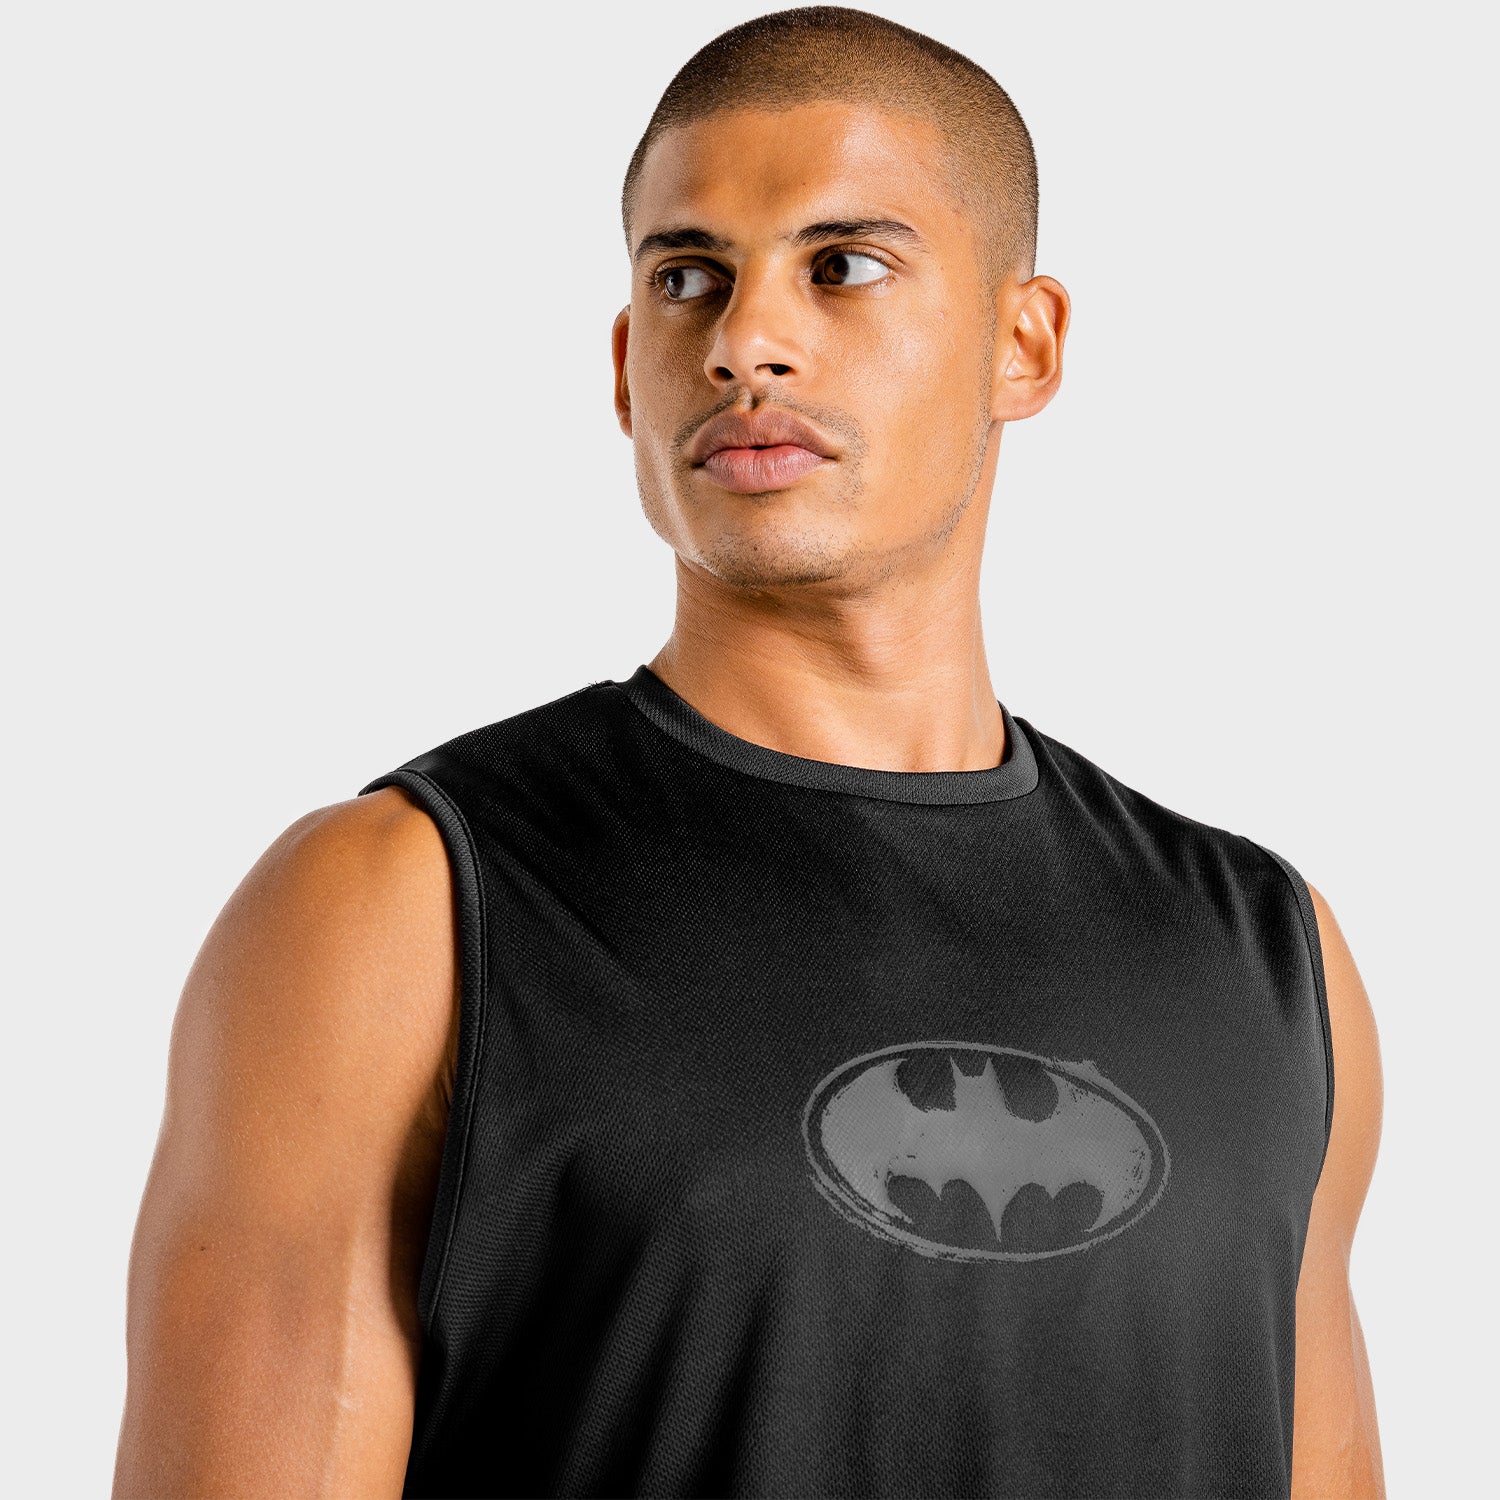 squatwolf-workout-tank-tops-for-men-batman-gym-tank-black-gym-wear